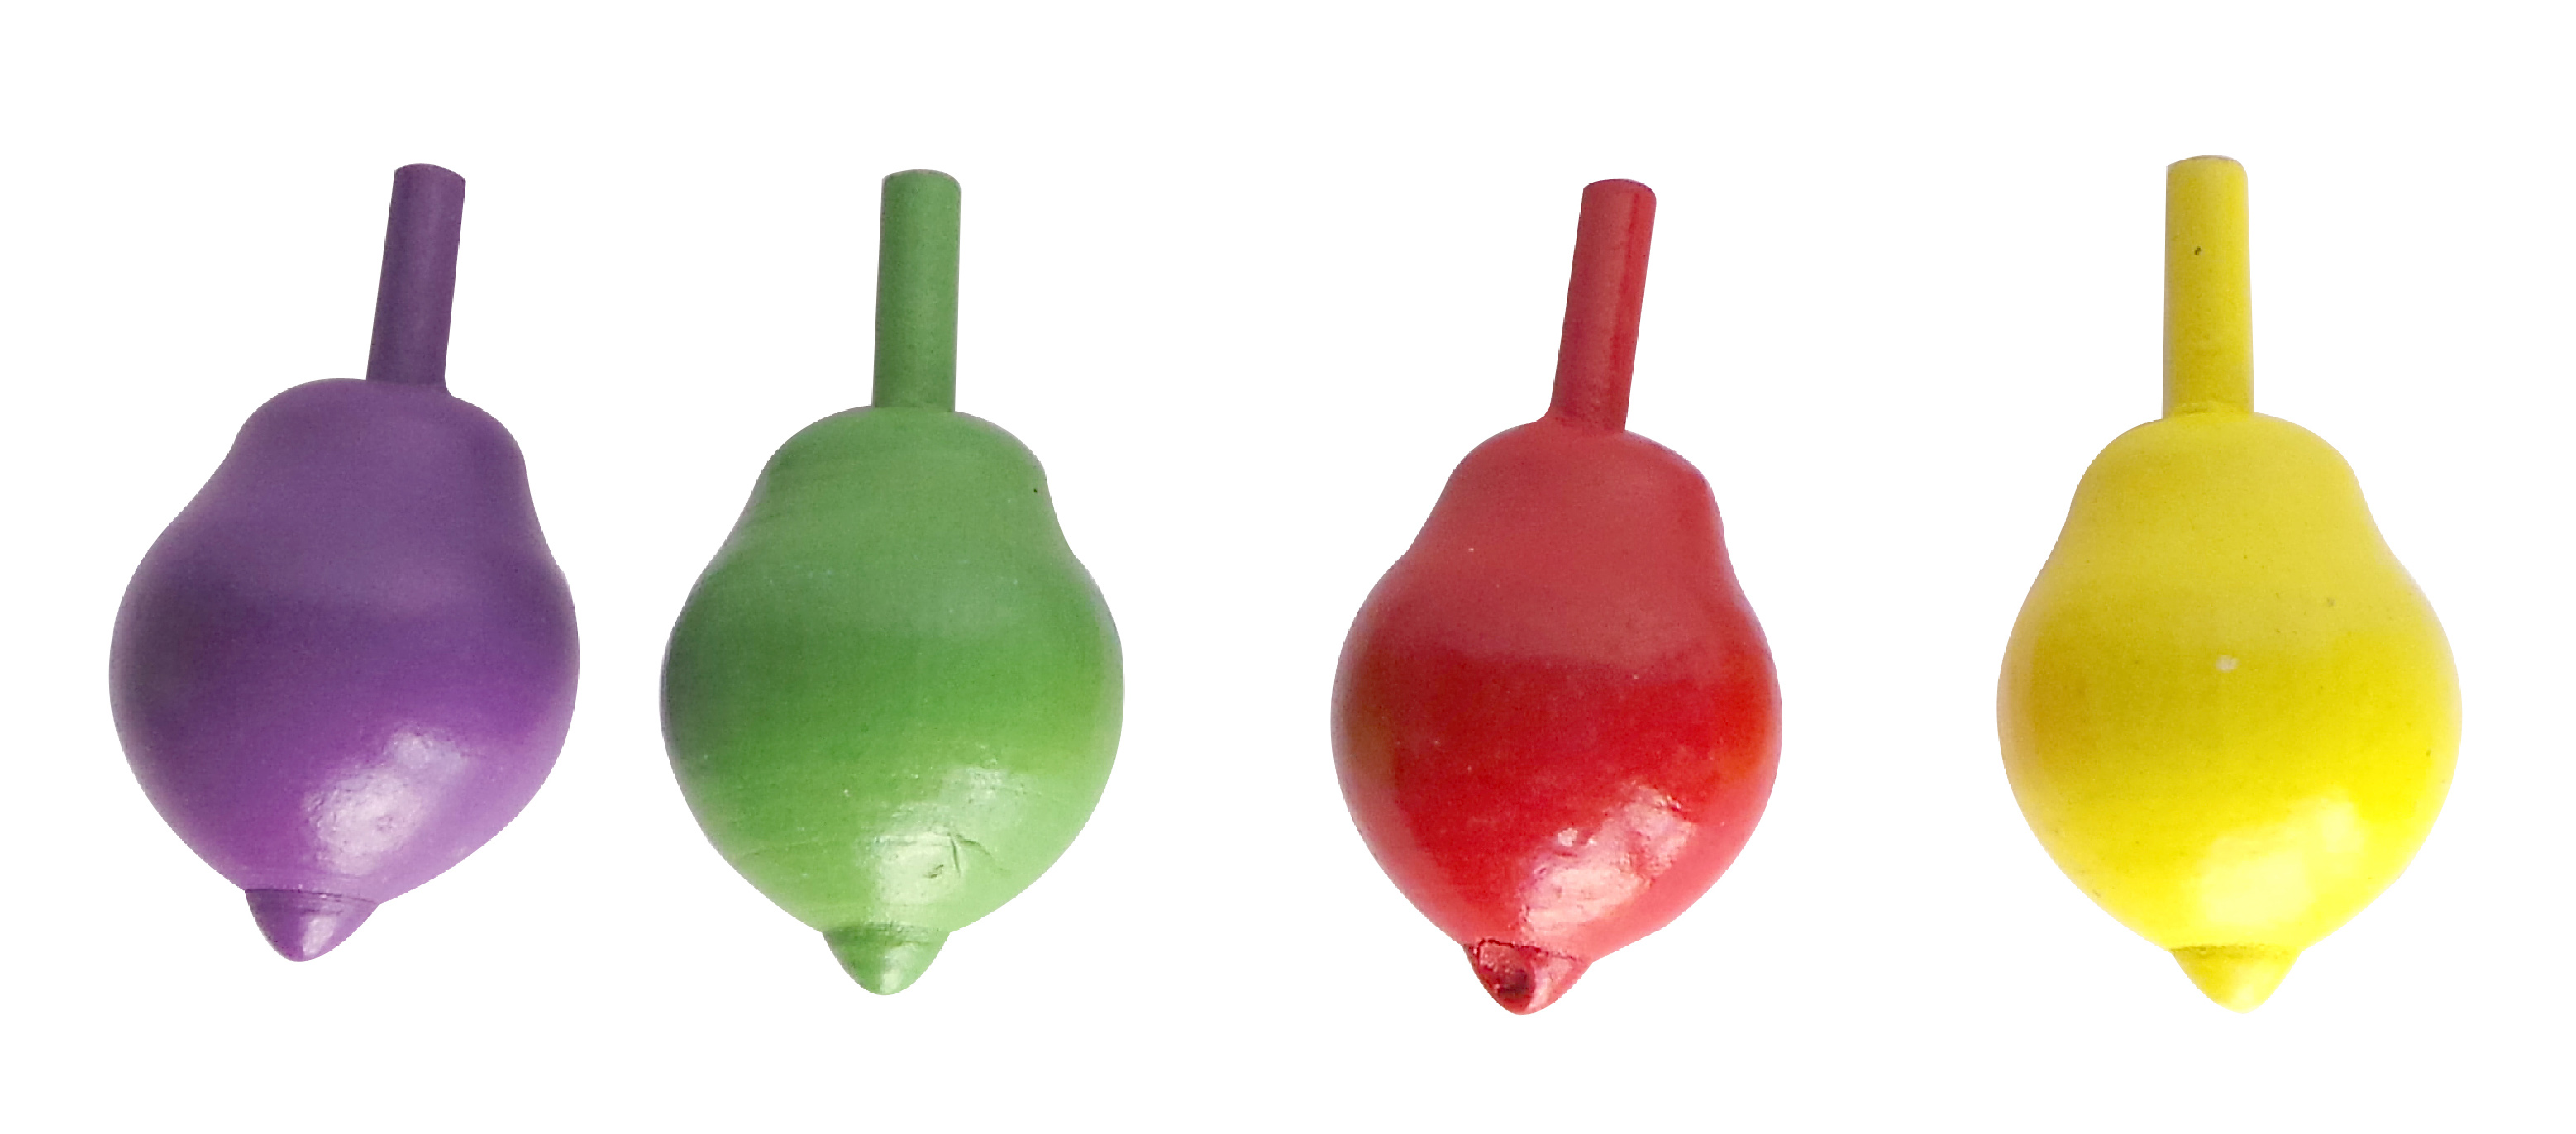 Волчок фрукты. Волчок 5.5. Пластиковая игрушка волчок зеленая цвета логопедический для детей.